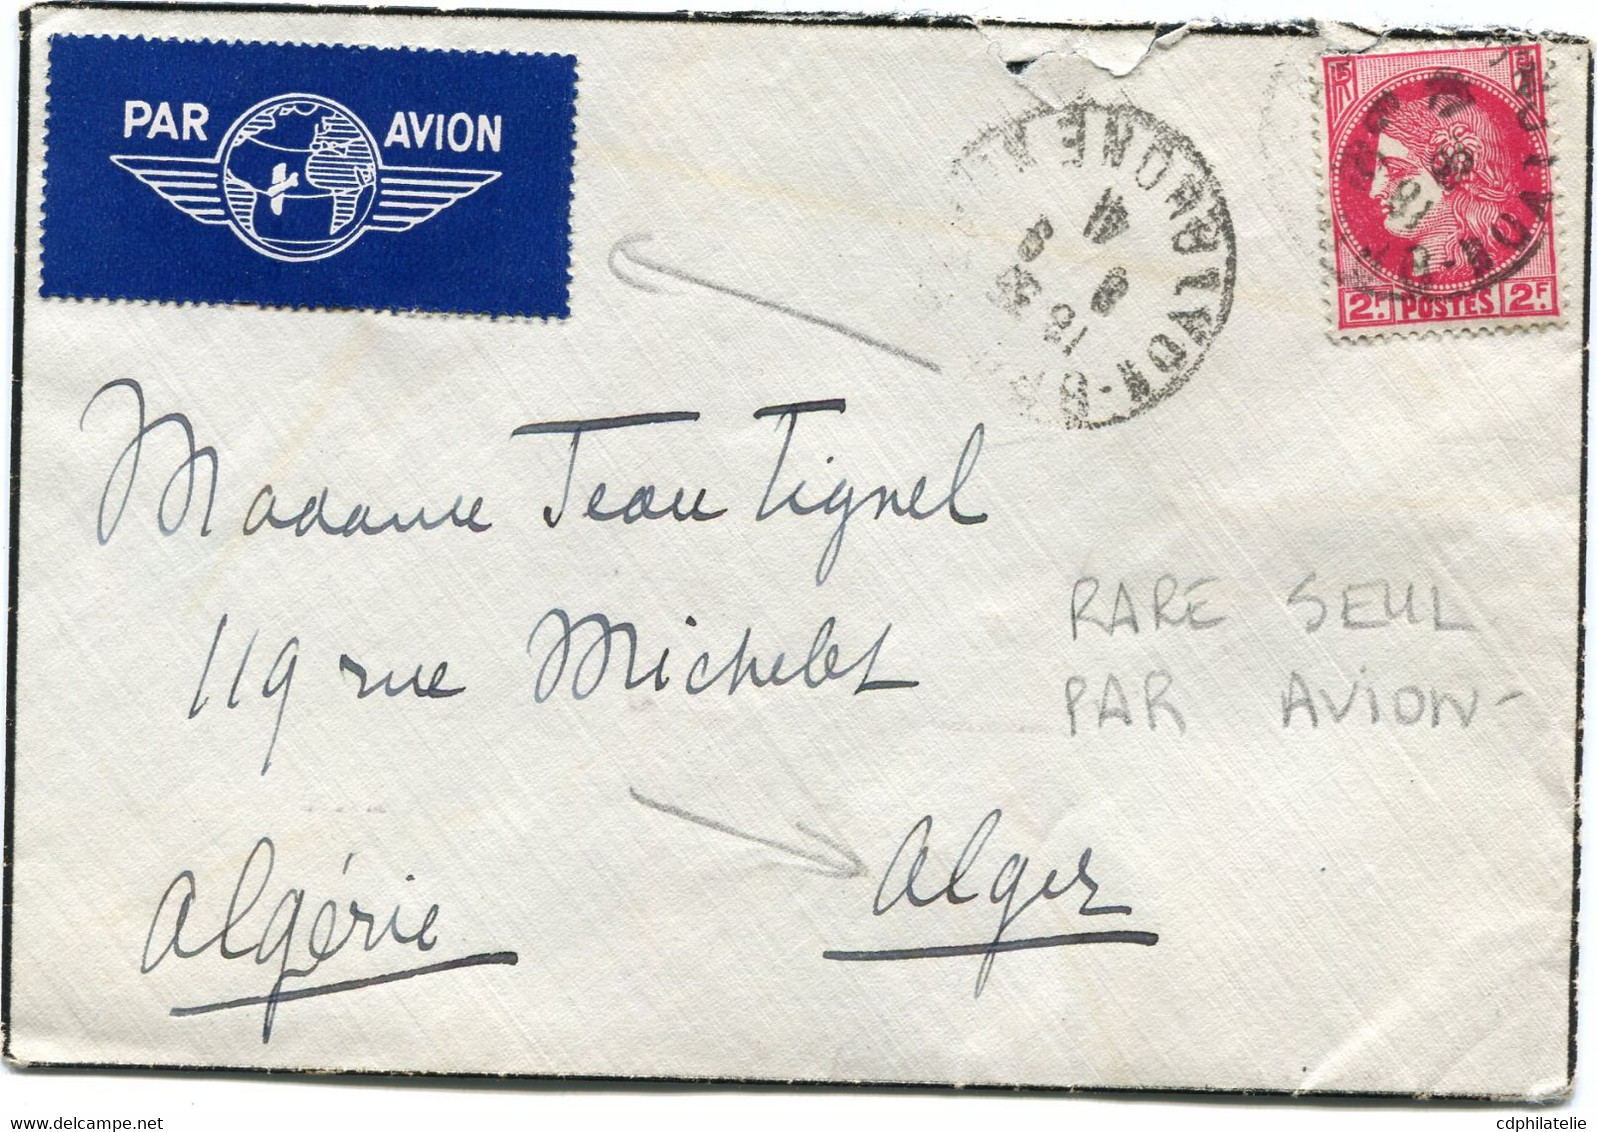 FRANCE LETTRE PAR AVION DEPART LYON-? 8-9-41 RHONE POUR L'ALGERIE - 1945-47 Ceres De Mazelin